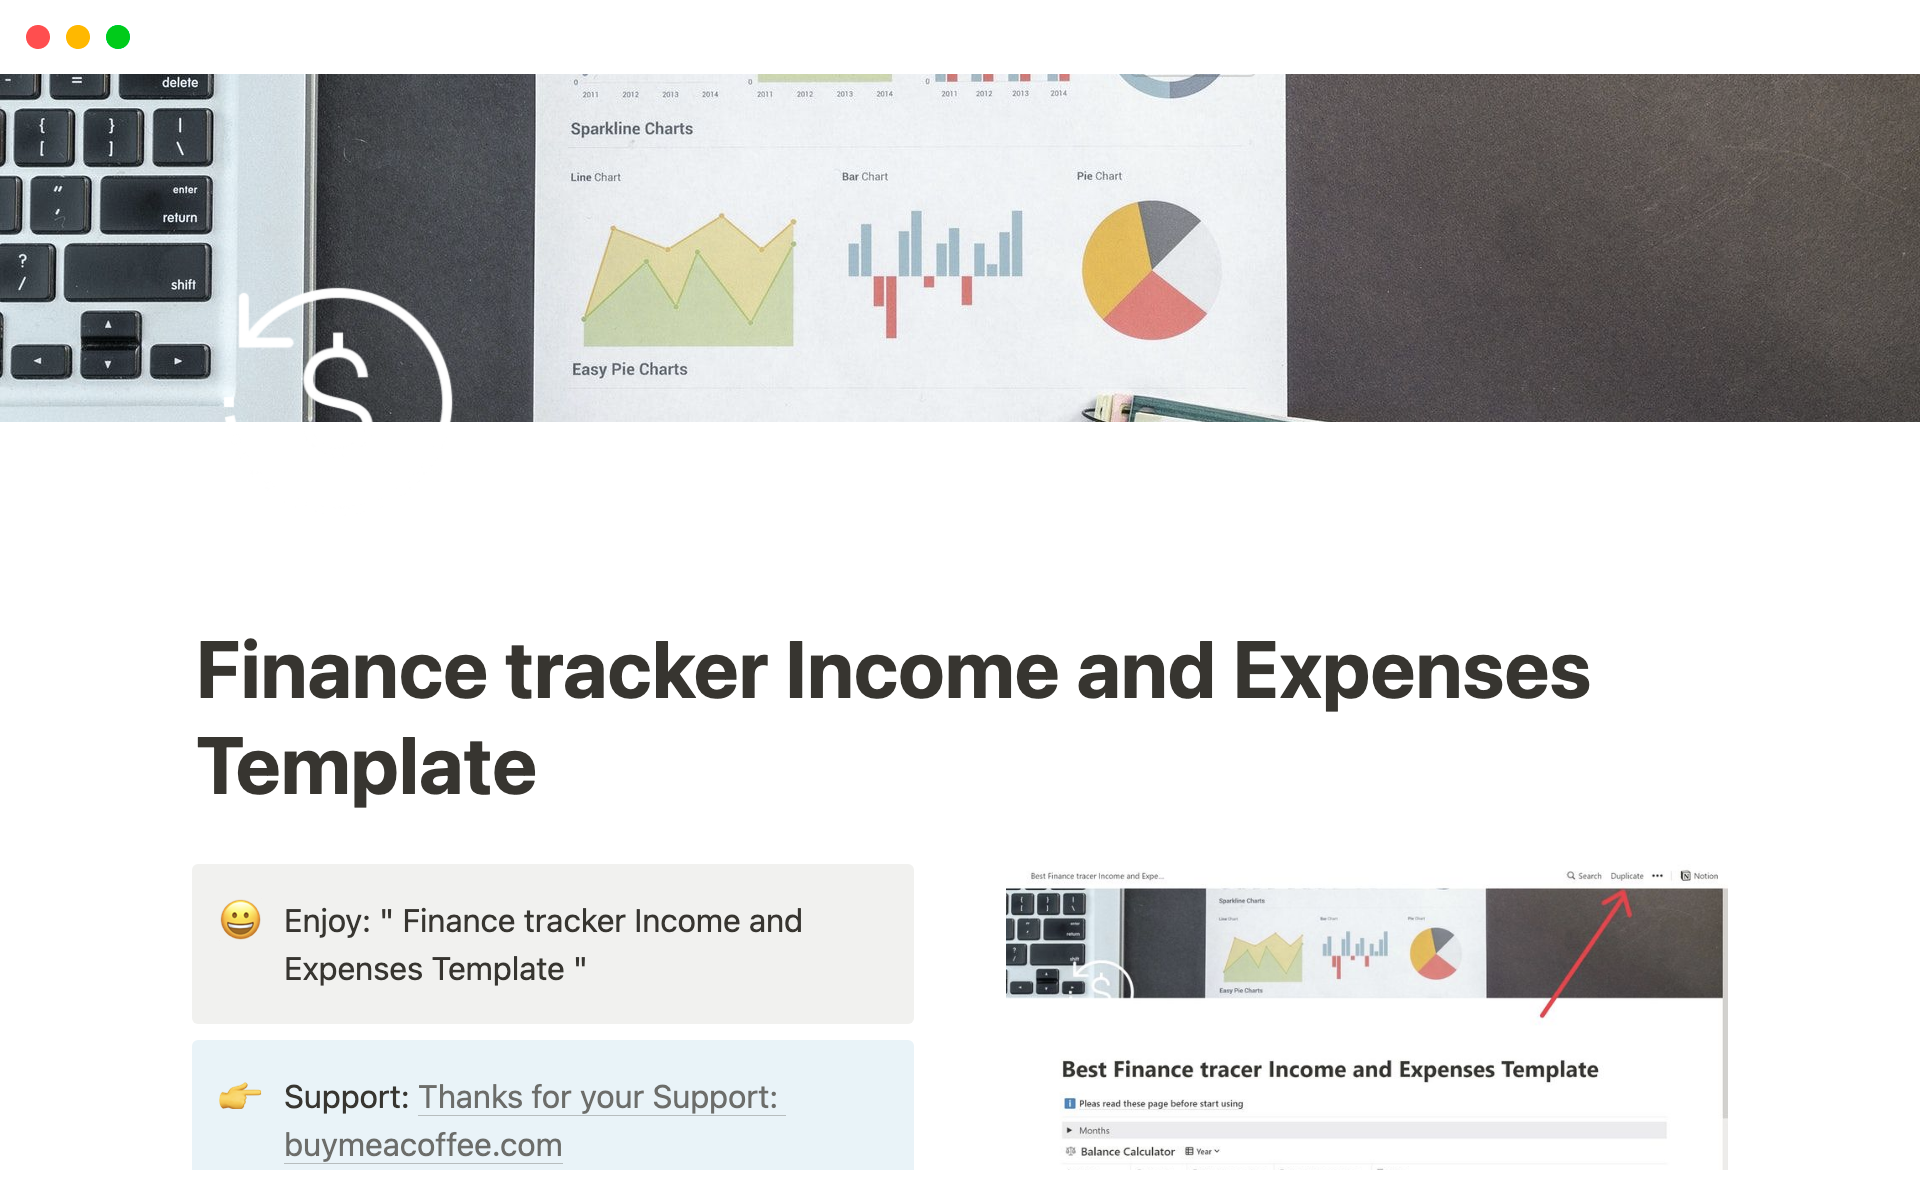 Uma prévia do modelo para Finance tracker Income and Expenses Template